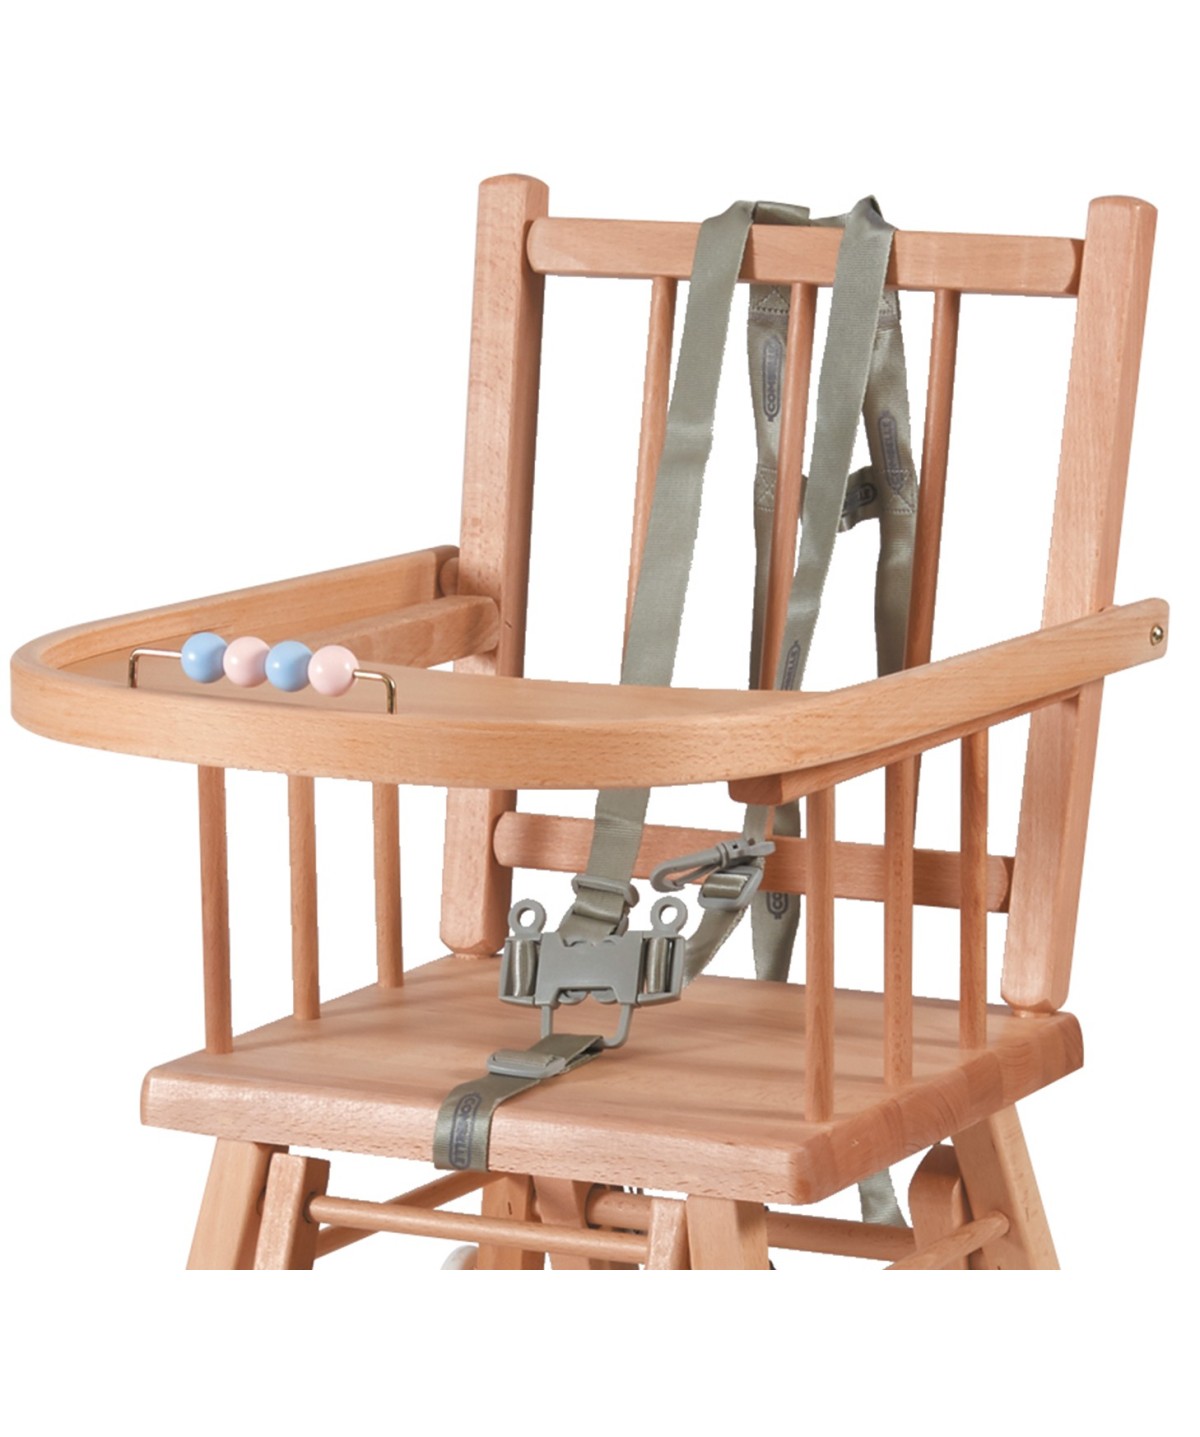 Ceinture de siège bébé Sangles de chaise haute pour bébé